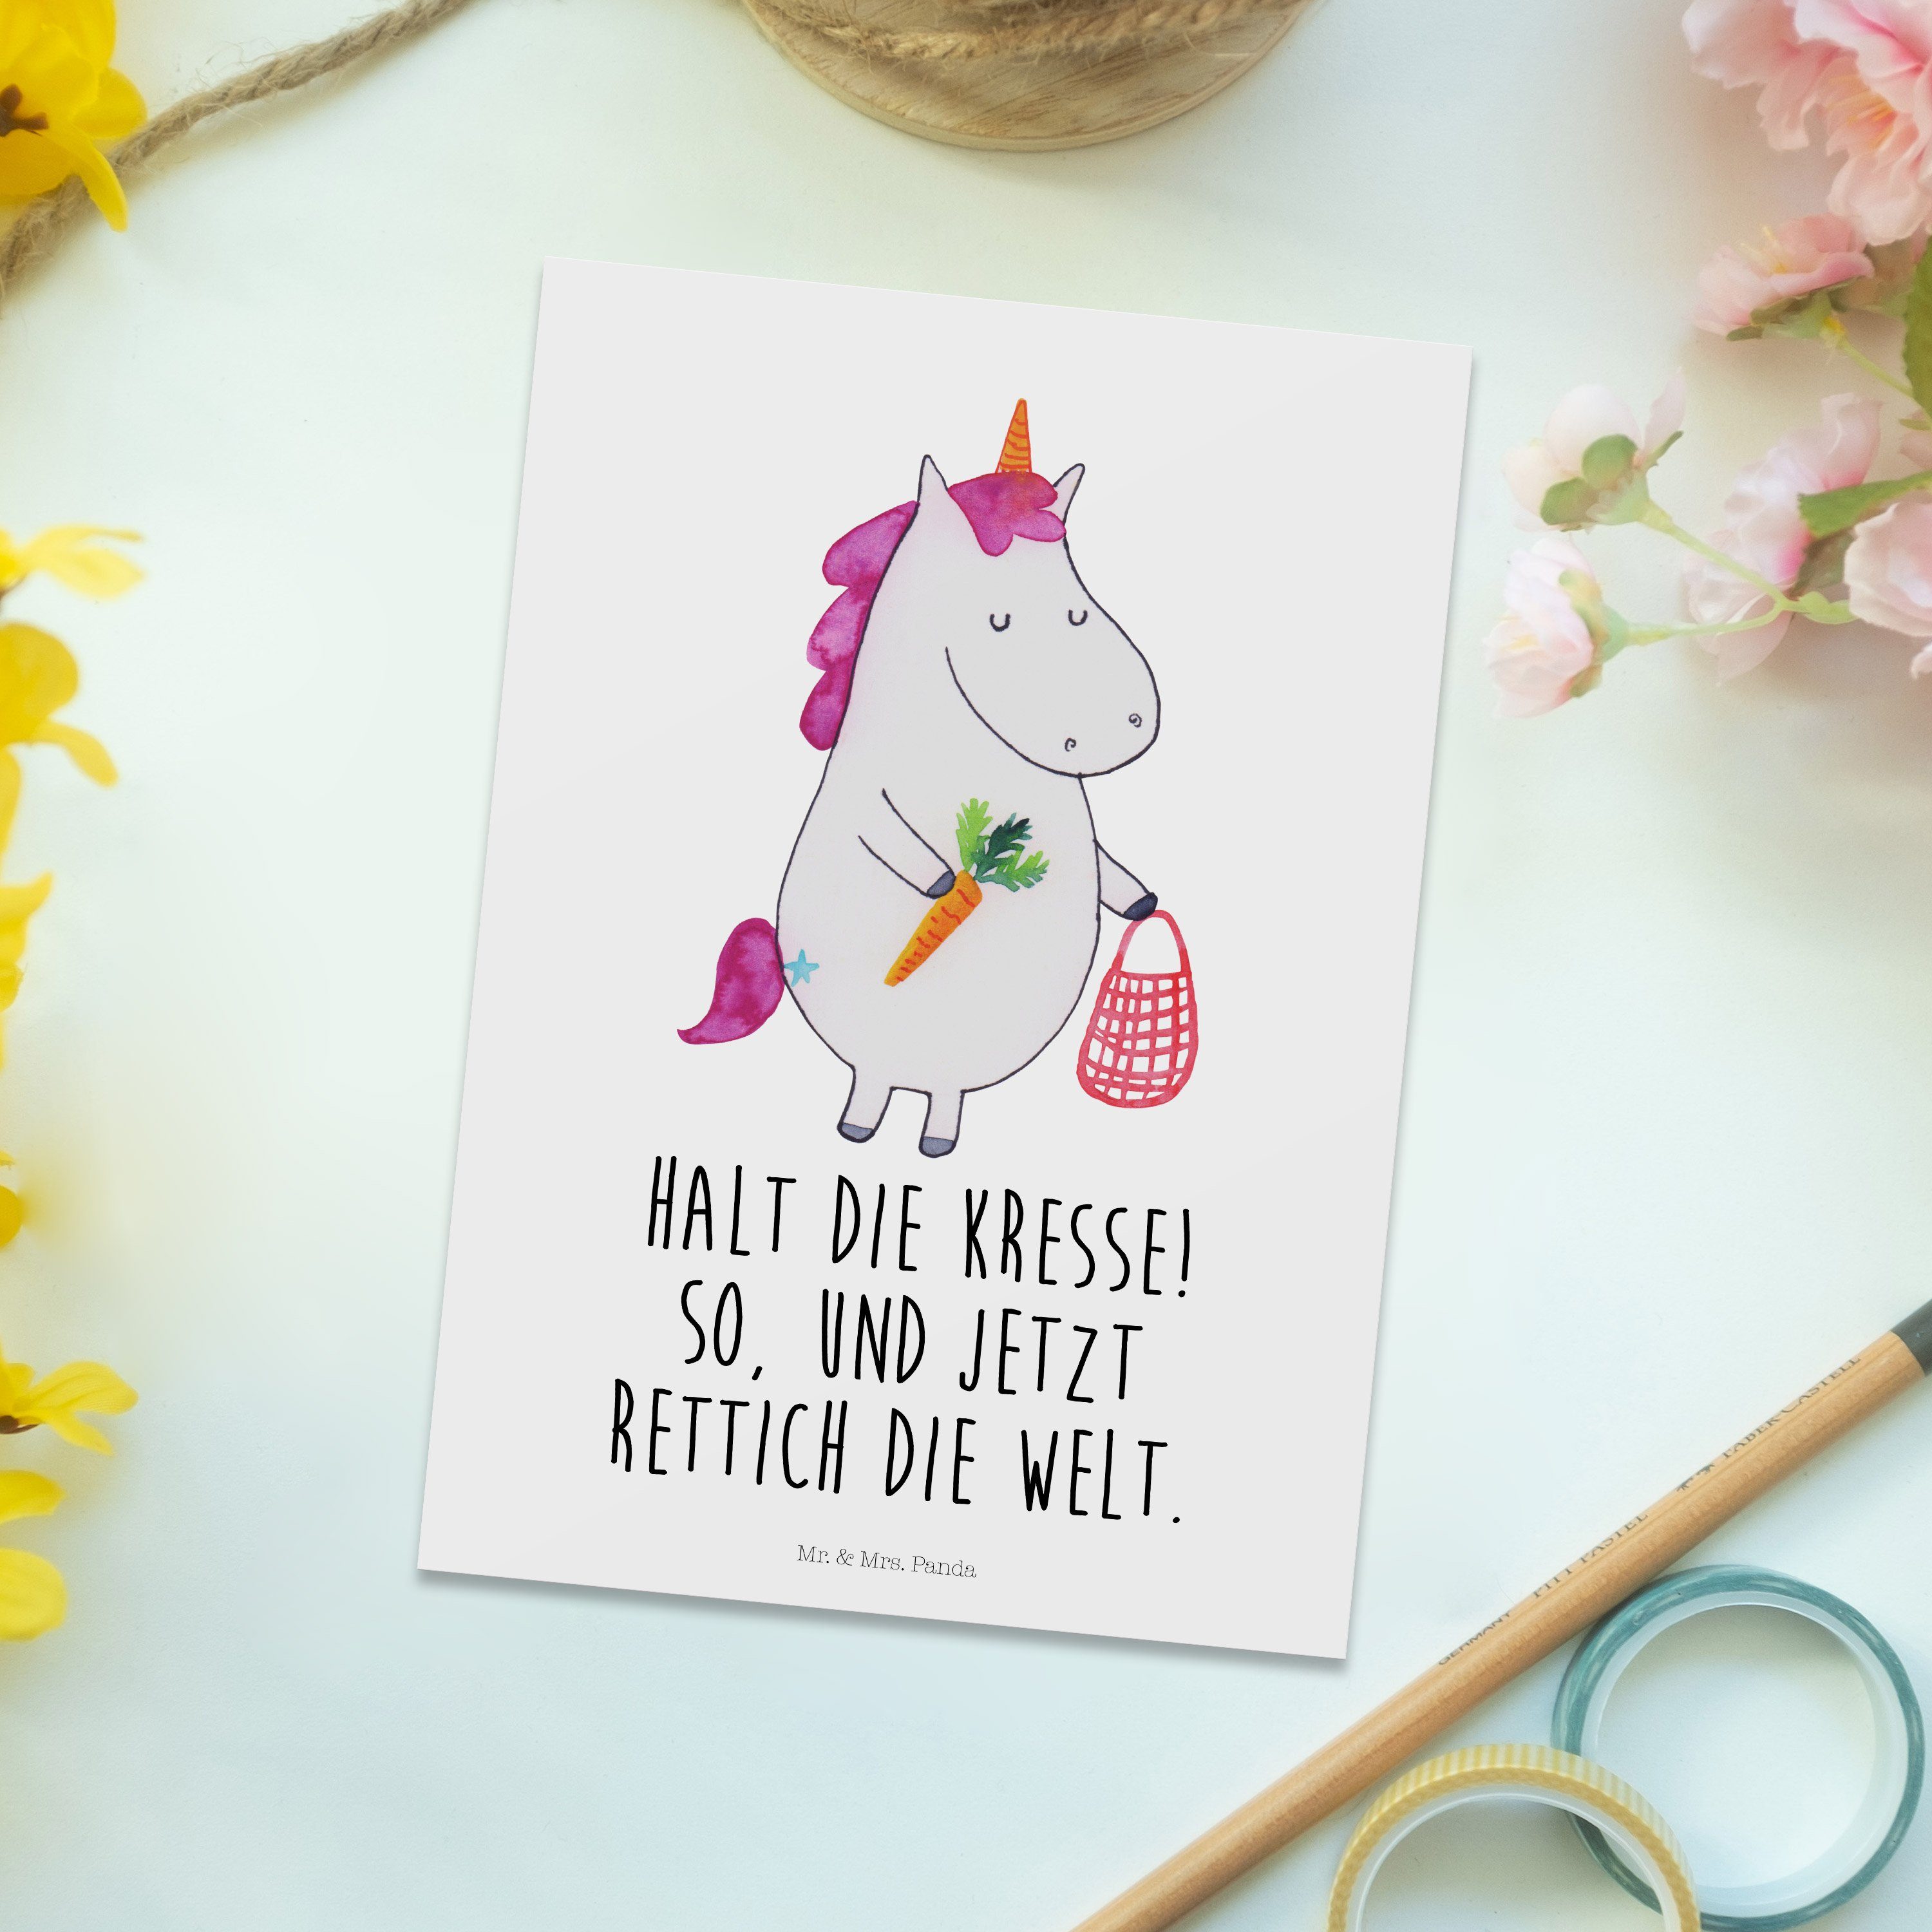 Mr. & Mrs. Panda Weiß Einhorn Deko, - Geburtstagskarte, - Postkarte Gemüse Geschenk, Gru Einhorn